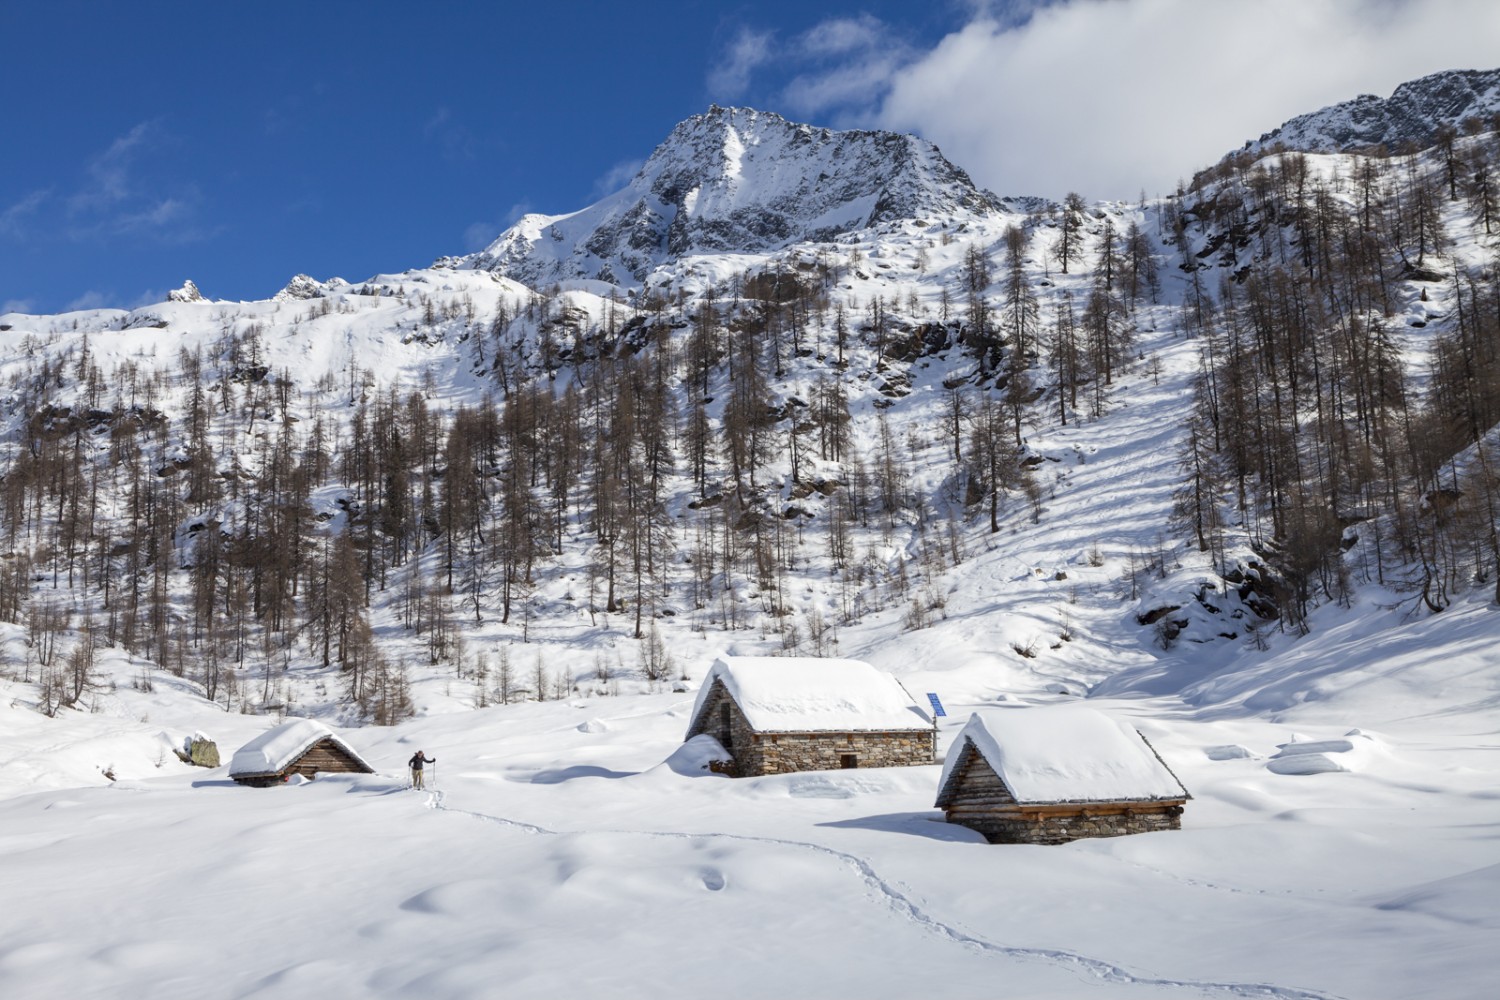 En hiver, les alpages du Val Lavizzara sont déserts. Photo: Iris Kürschner